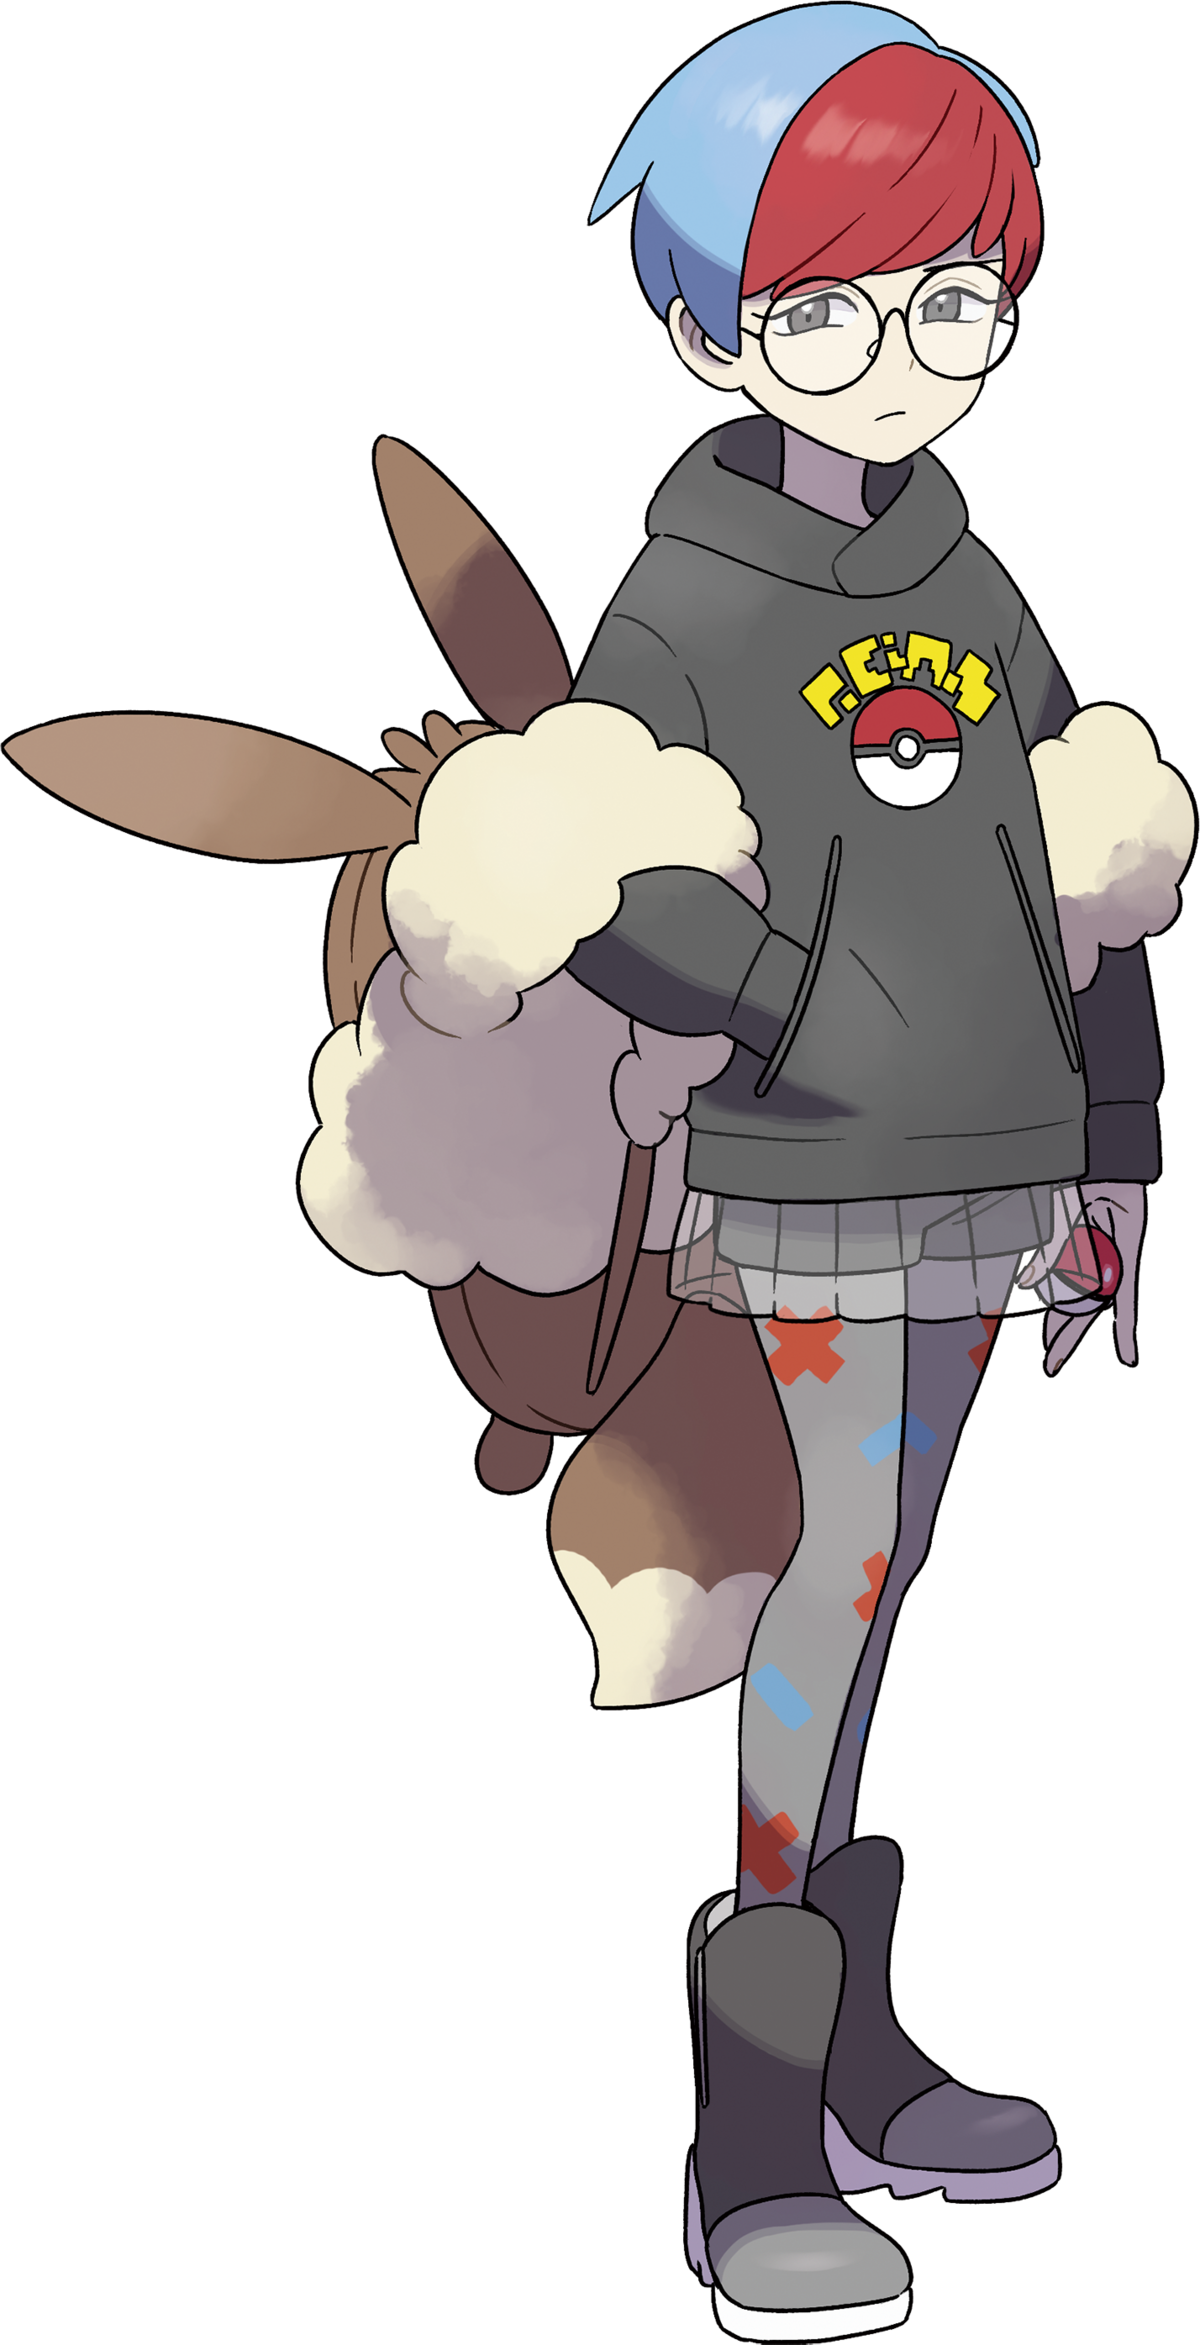 Cetitan (Pokémon) - Bulbapedia, the community-driven Pokémon